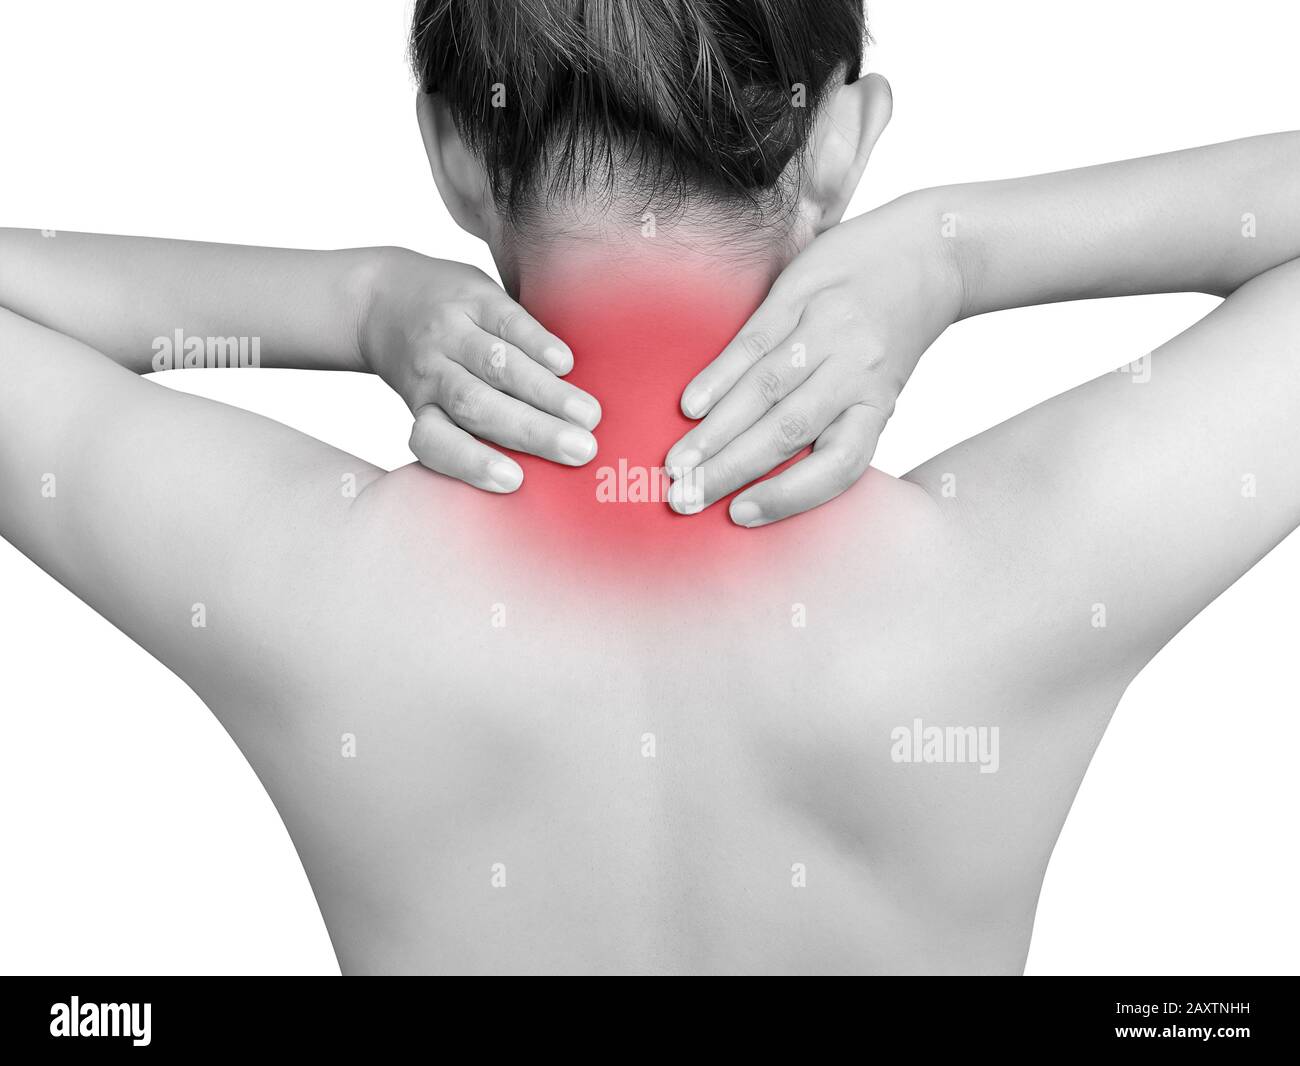 Femme asiatique souffrant de douleurs au cou. Surbrillance mono ton avec couleur rouge au cou isolé sur fond blanc. Soins de santé et concept médical Banque D'Images